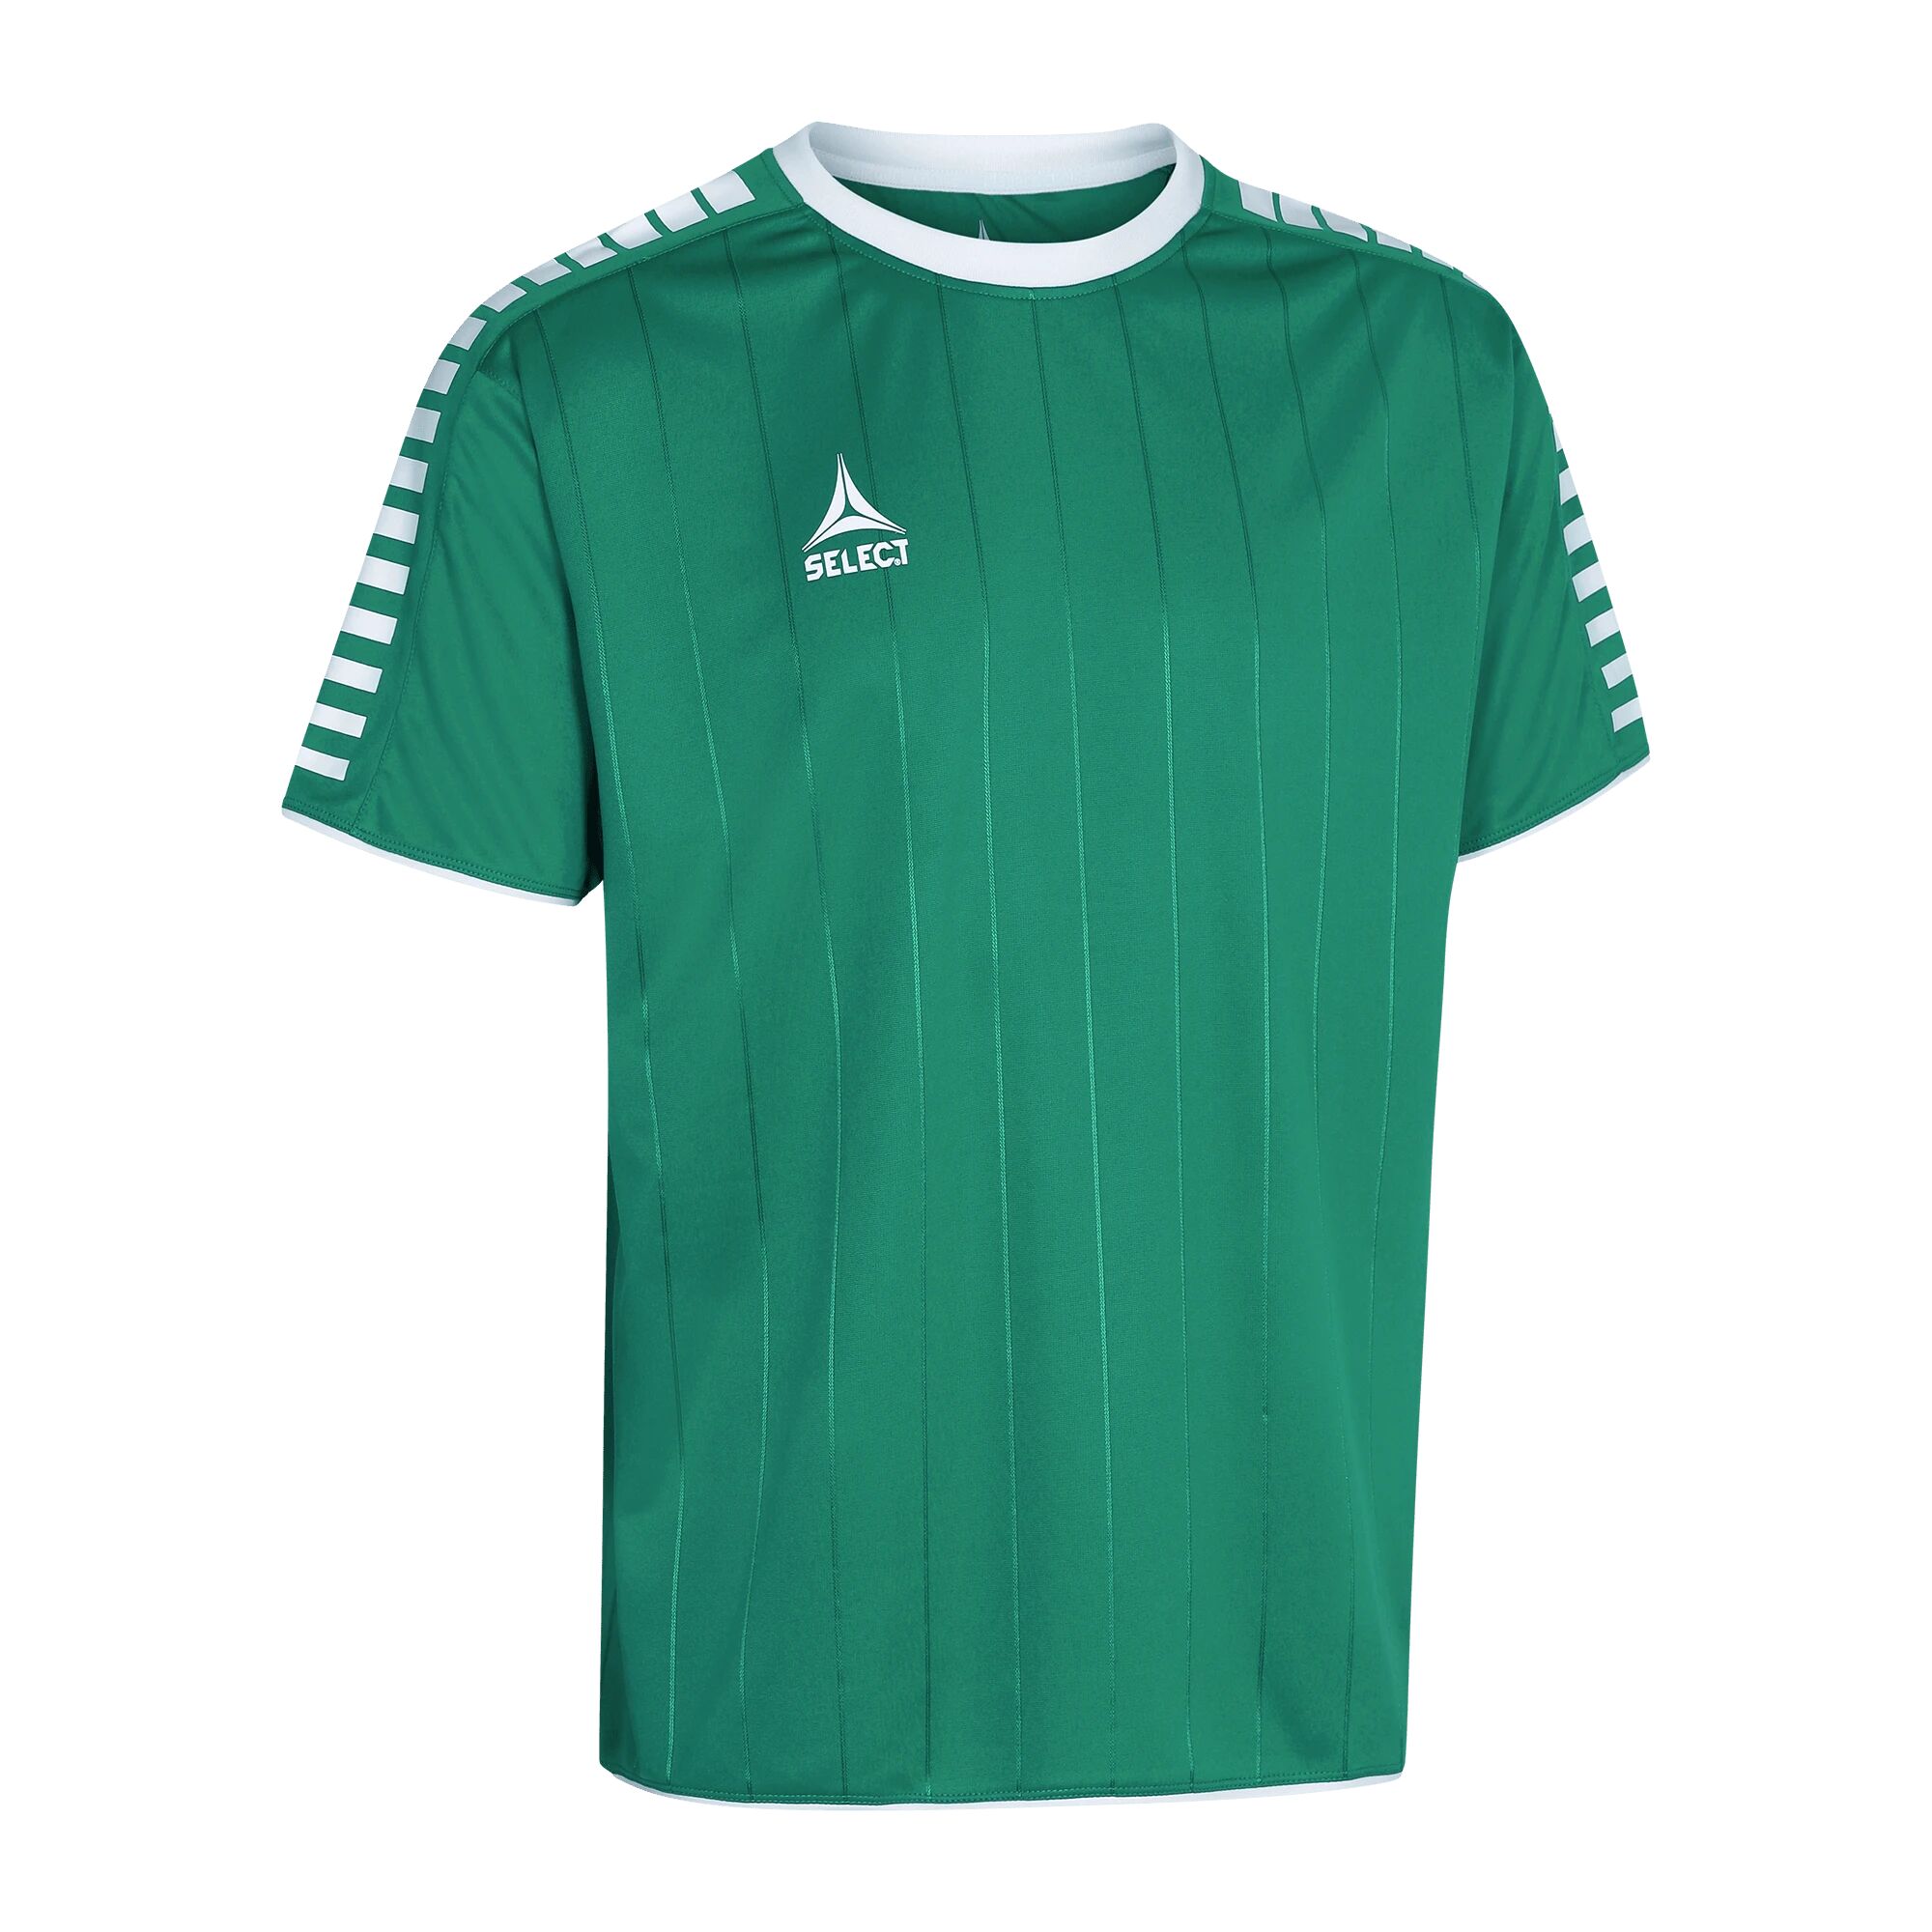 Select Player shirt S/S Argentina, fotballtrøye senior S Green